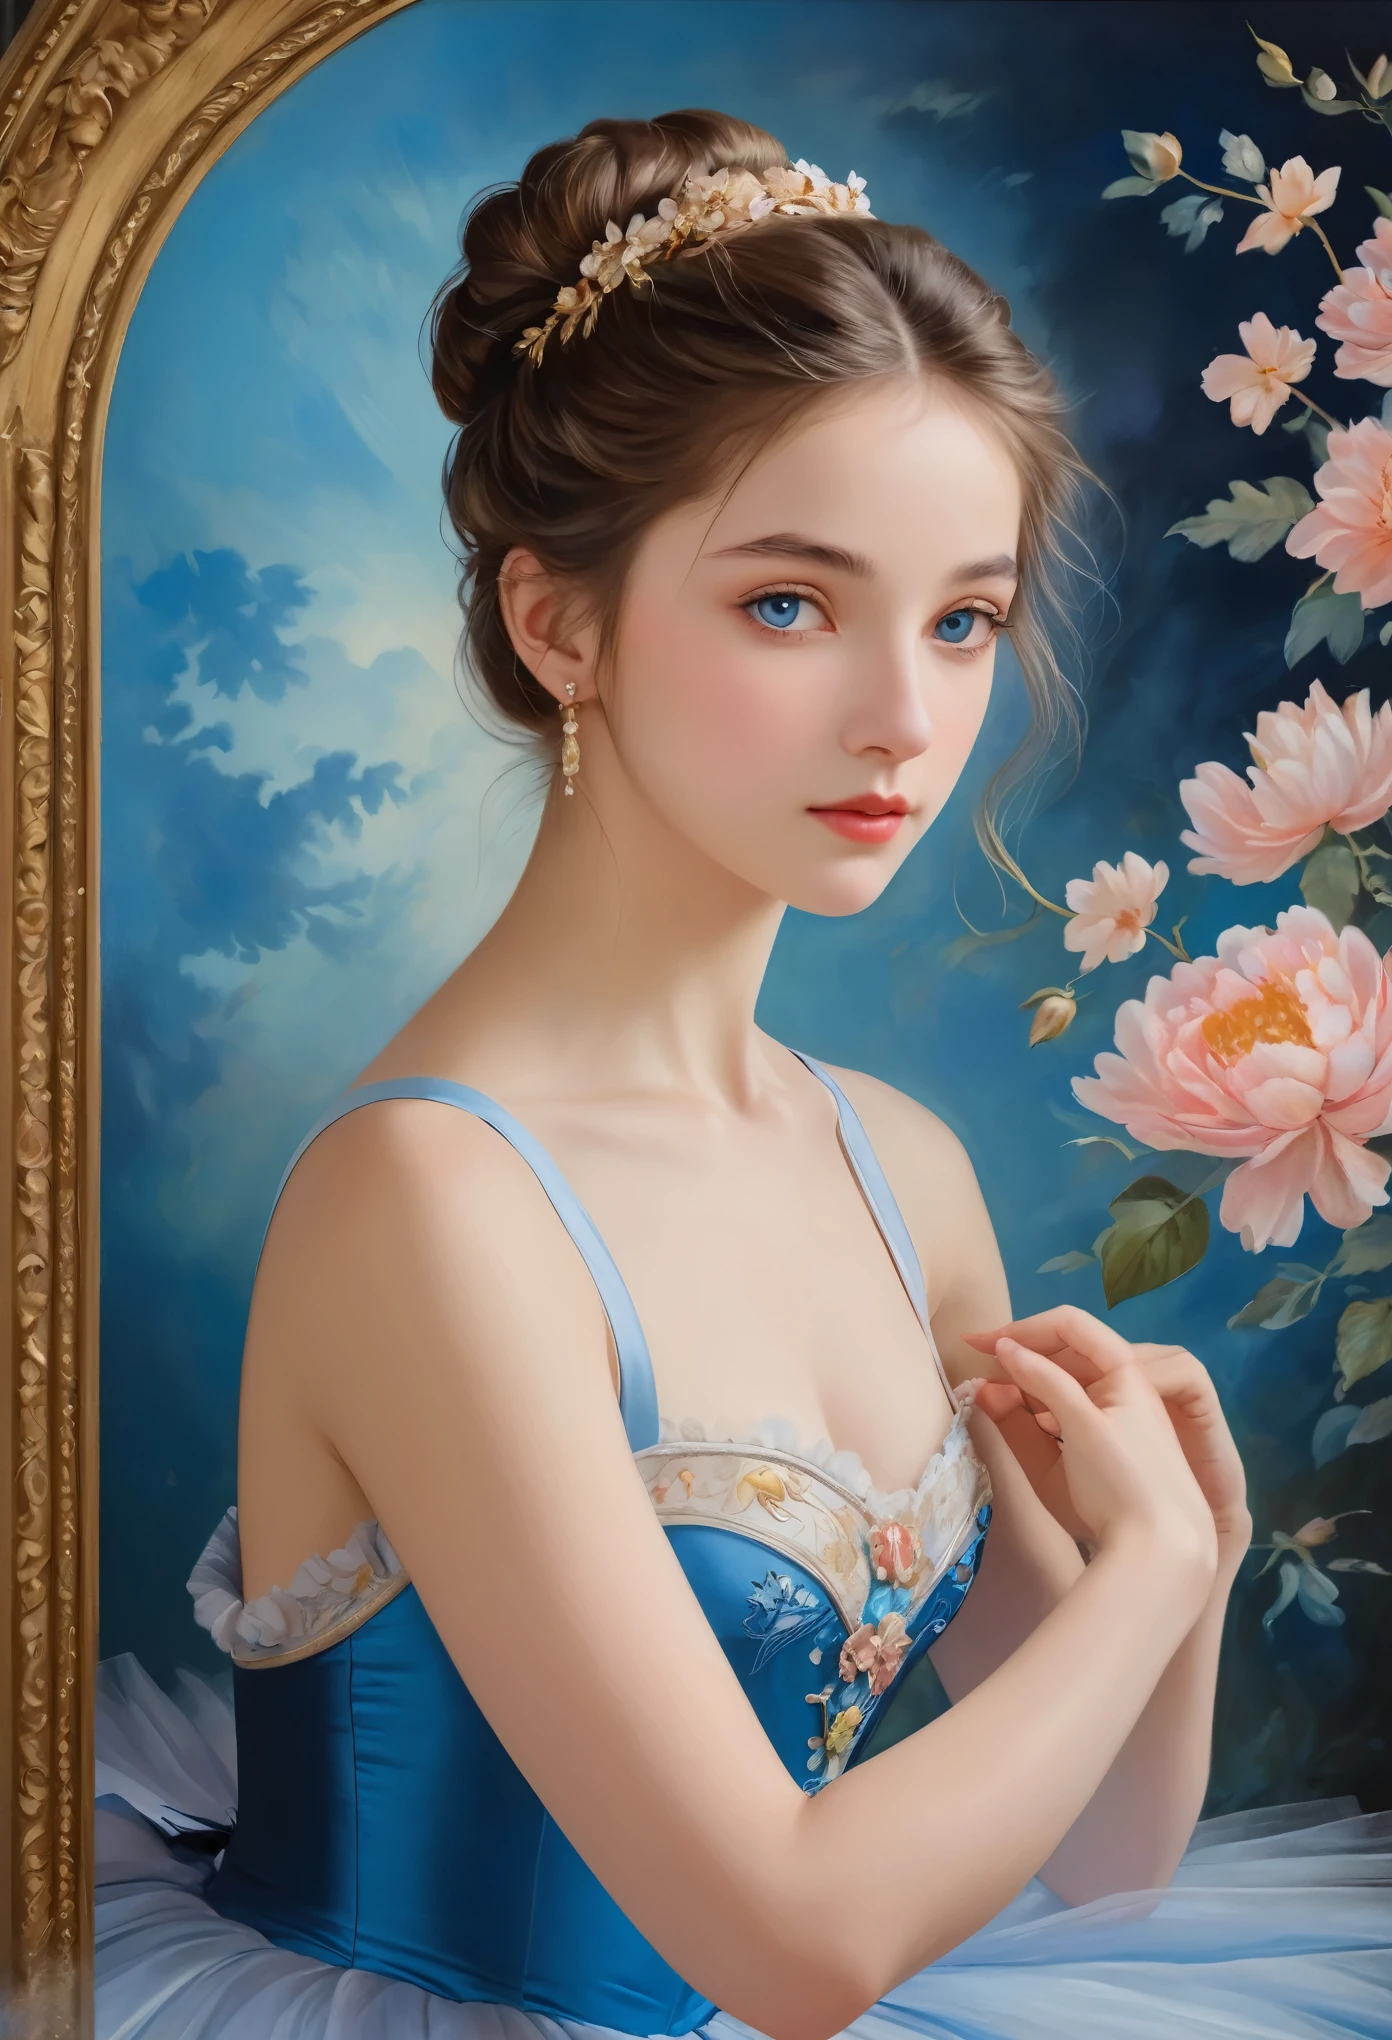 (Высокое разрешение,шедевр:1.2),(реалистичный:1.37)"(высшее качество, Высокое разрешение, очень подробный, реалистичный),Красивый портрет 16-летней французской балерины XIX века., (Она наполовину француженка, наполовину японка..., Она красивая женщина с глубокими голубыми глазами и высоким носом...:1.1), Красивые балетные костюмы., подробные черты лица, Длинная и изящная шея, распущенные пряди волос, Спокойная и изящная поза, мягкое и нежное освещение, Классическая картина маслом среднего размера, яркие цвета, нежный фон с цветочными мотивами", мечтательная атмосфера, Сюрреализм,загадочная аура